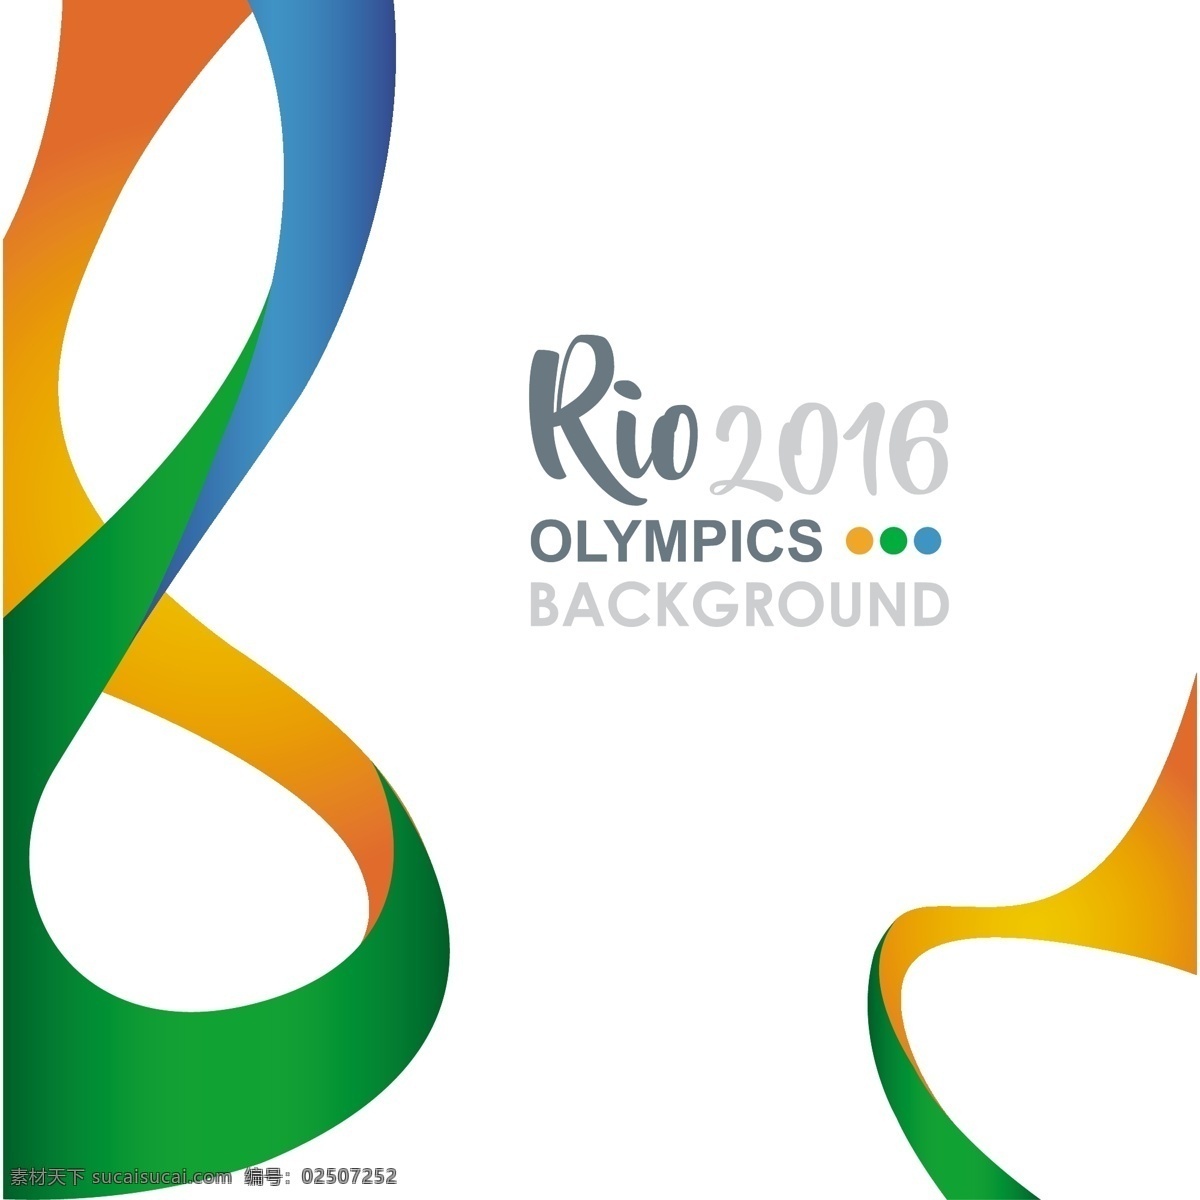 2016 巴西 奥运会 背景 矢量图 游戏 摘要背景 夏季运动 健康体育 健身运动项目 健康 运动训练 巴西背景 比赛生活方式 rio里约 白色